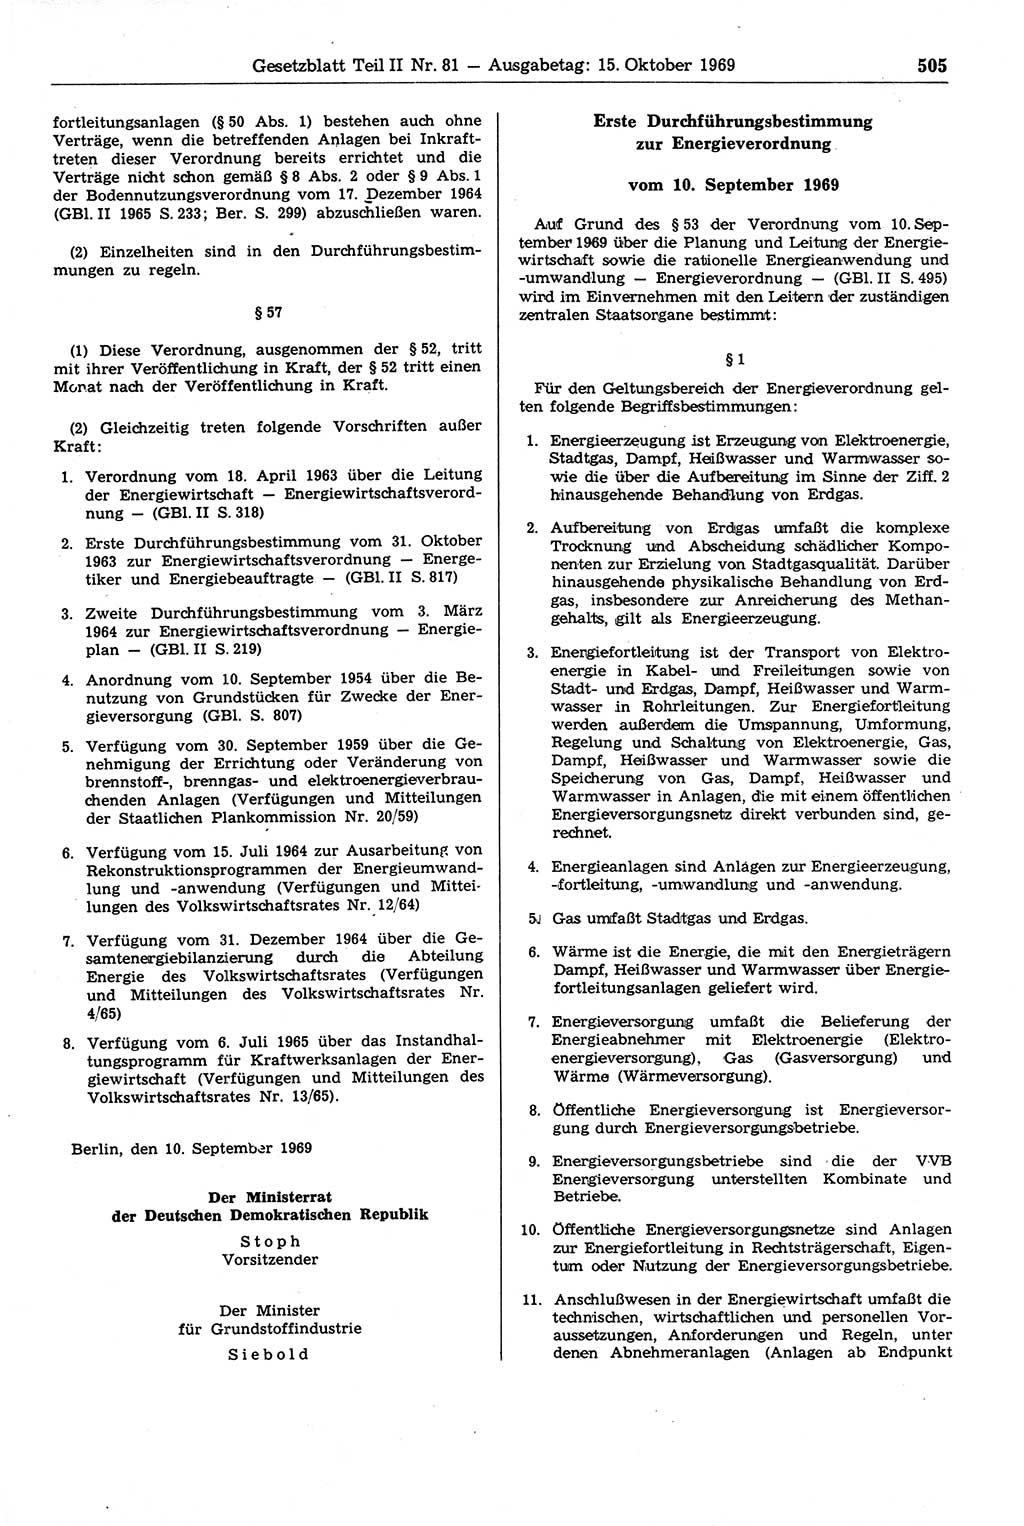 Gesetzblatt (GBl.) der Deutschen Demokratischen Republik (DDR) Teil ⅠⅠ 1969, Seite 505 (GBl. DDR ⅠⅠ 1969, S. 505)